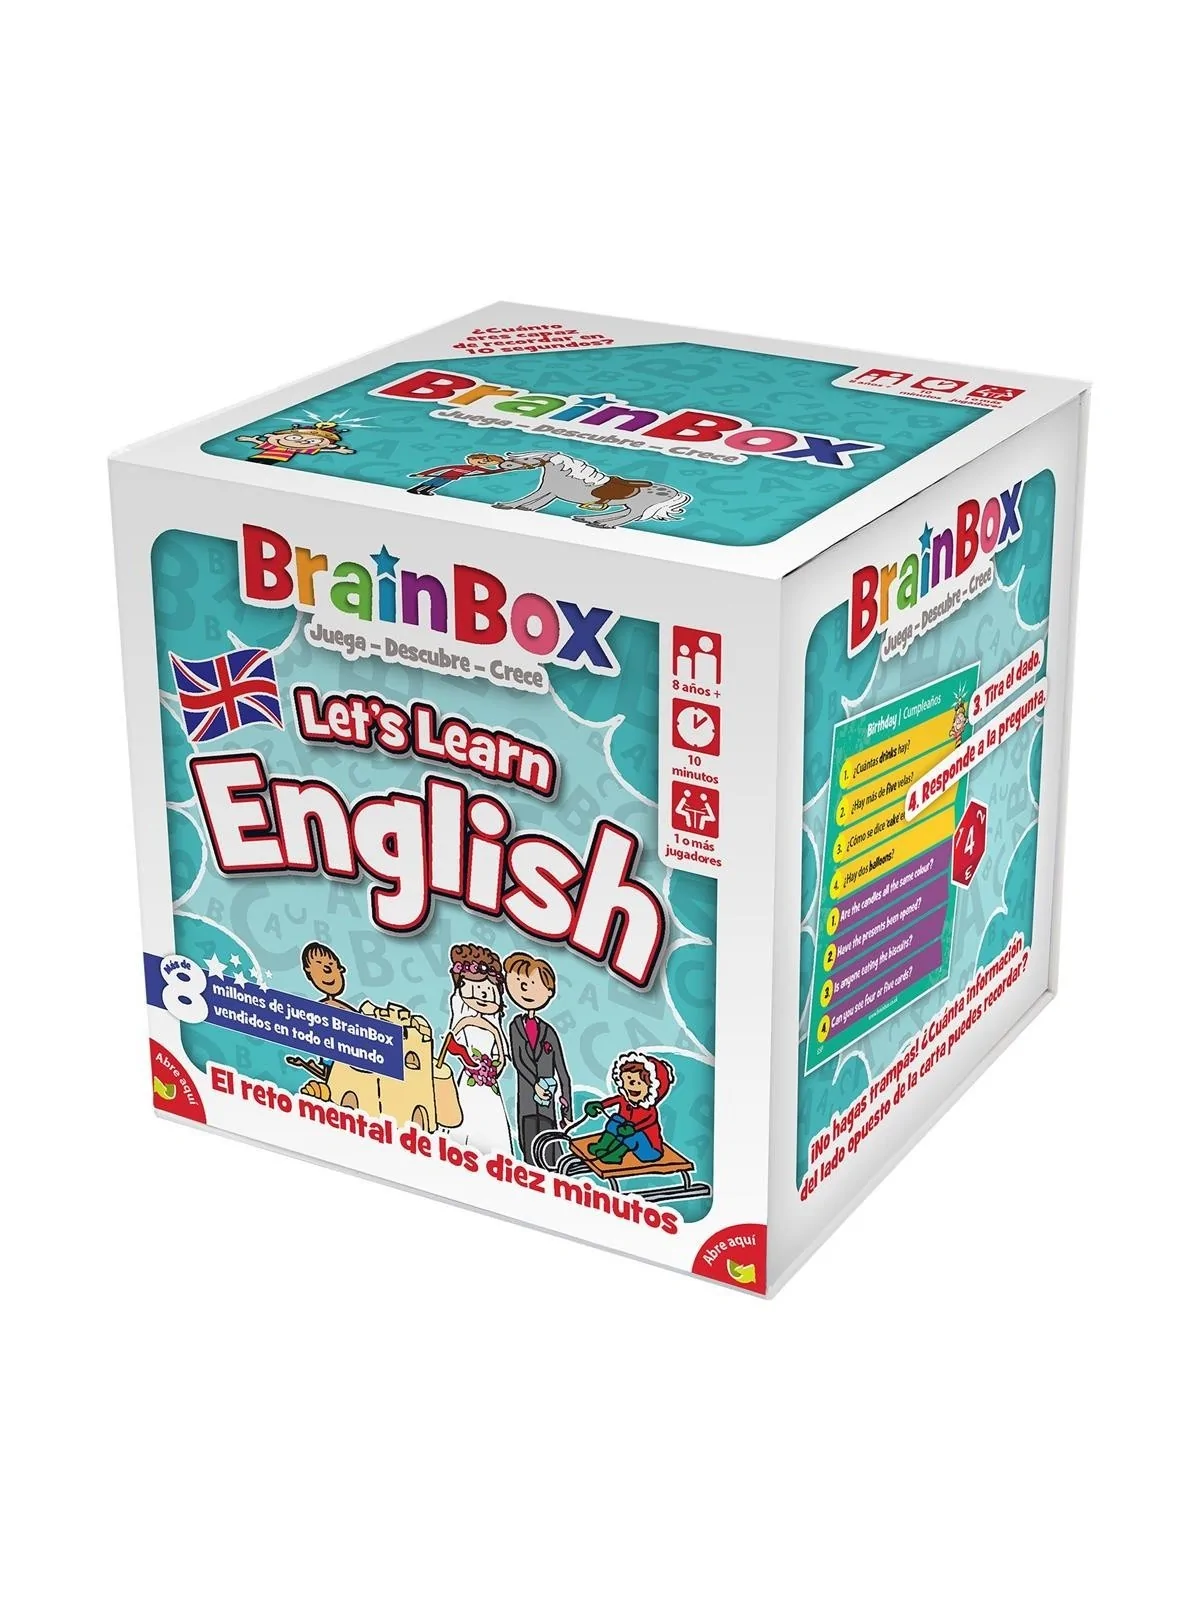 Comprar Brain Box Lets Learn English barato al mejor precio 15,29 € de